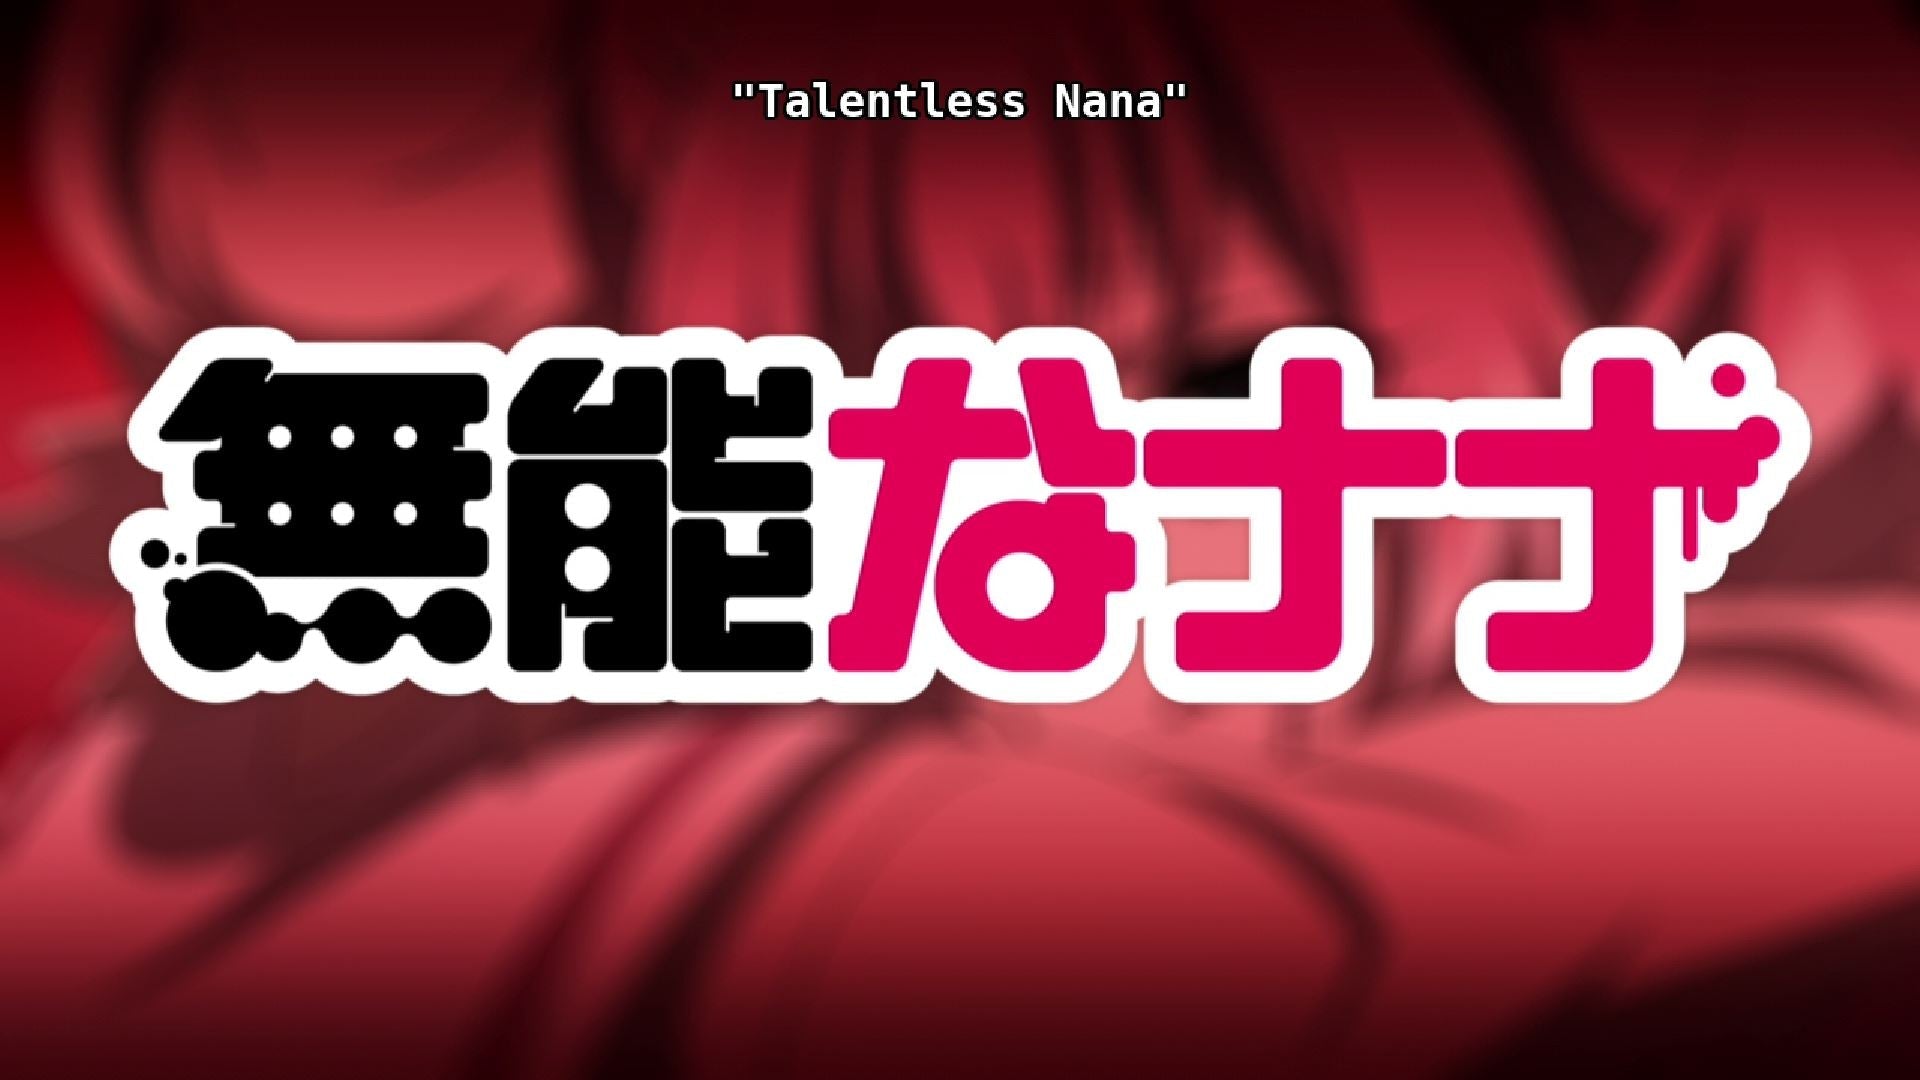 Watch Talentless Nana - Crunchyroll